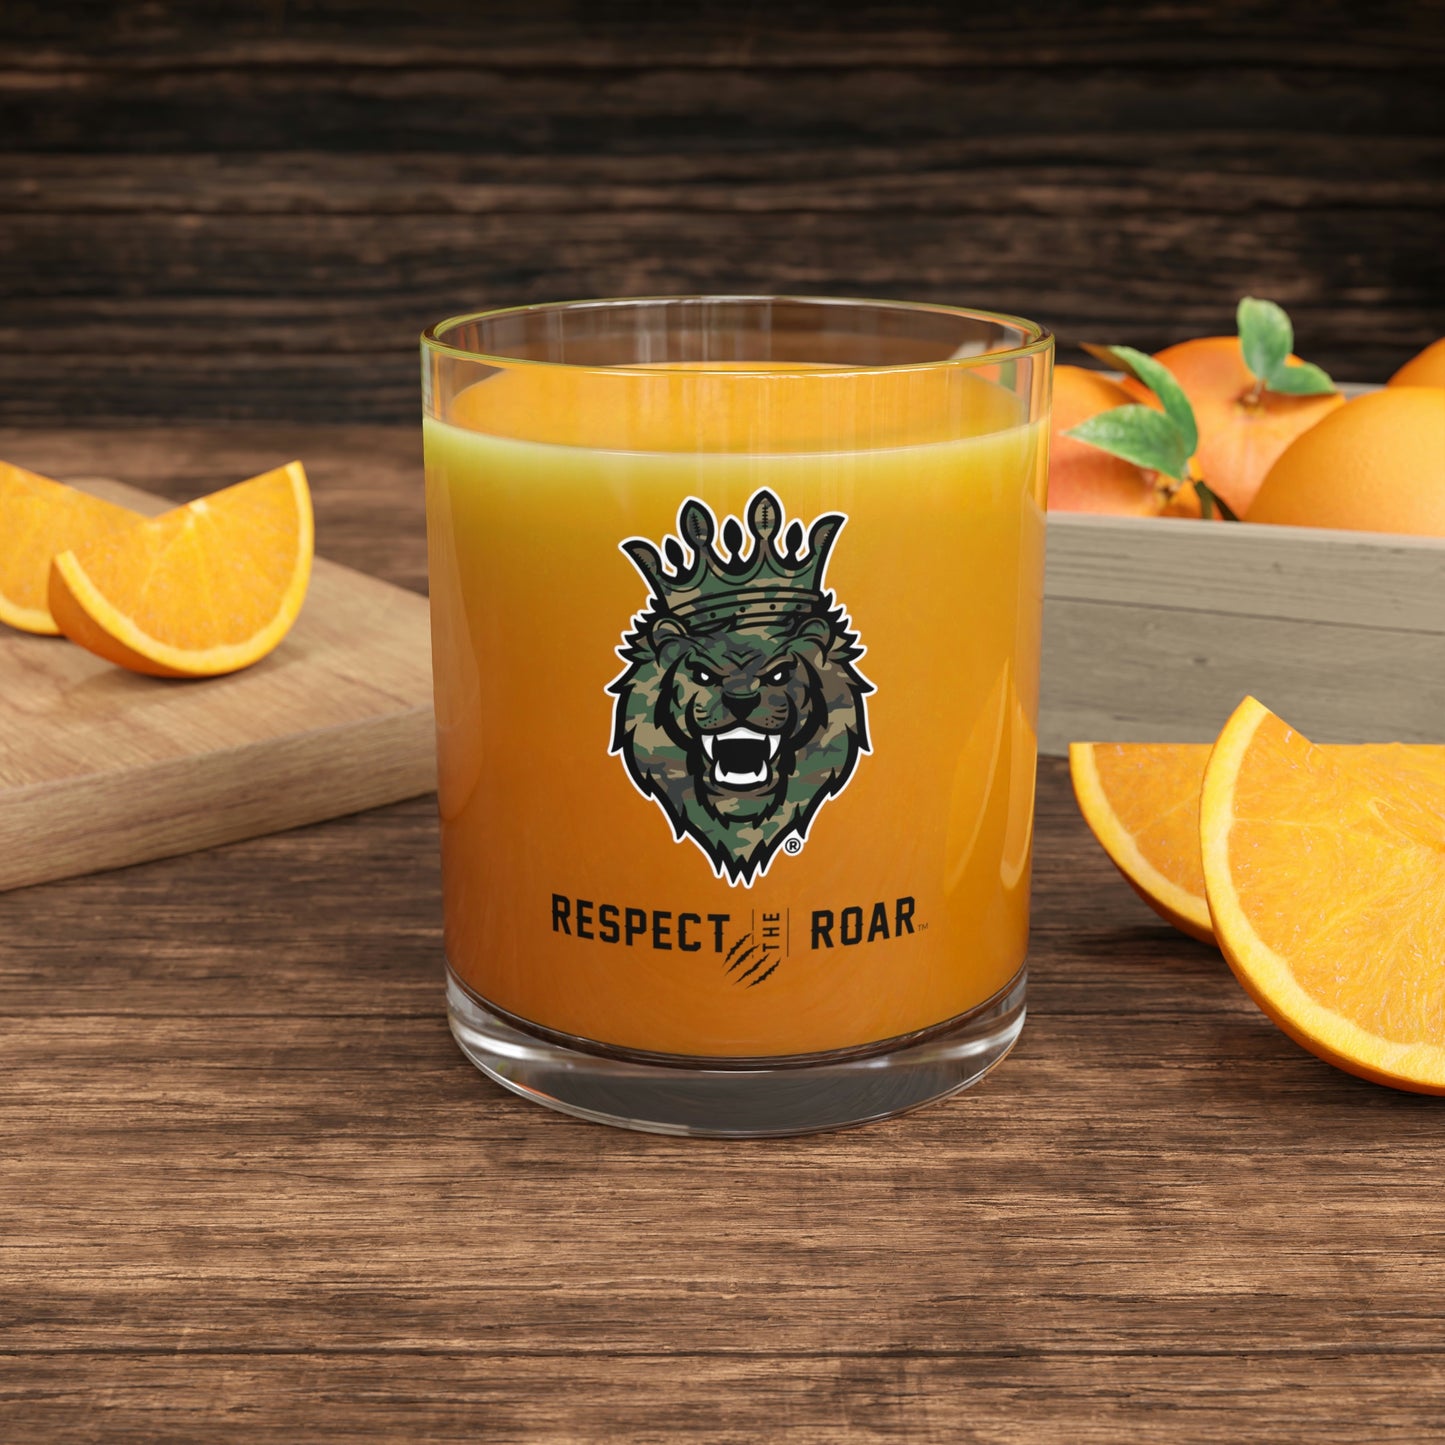 Respect The Roar (Green) - Bar Glass